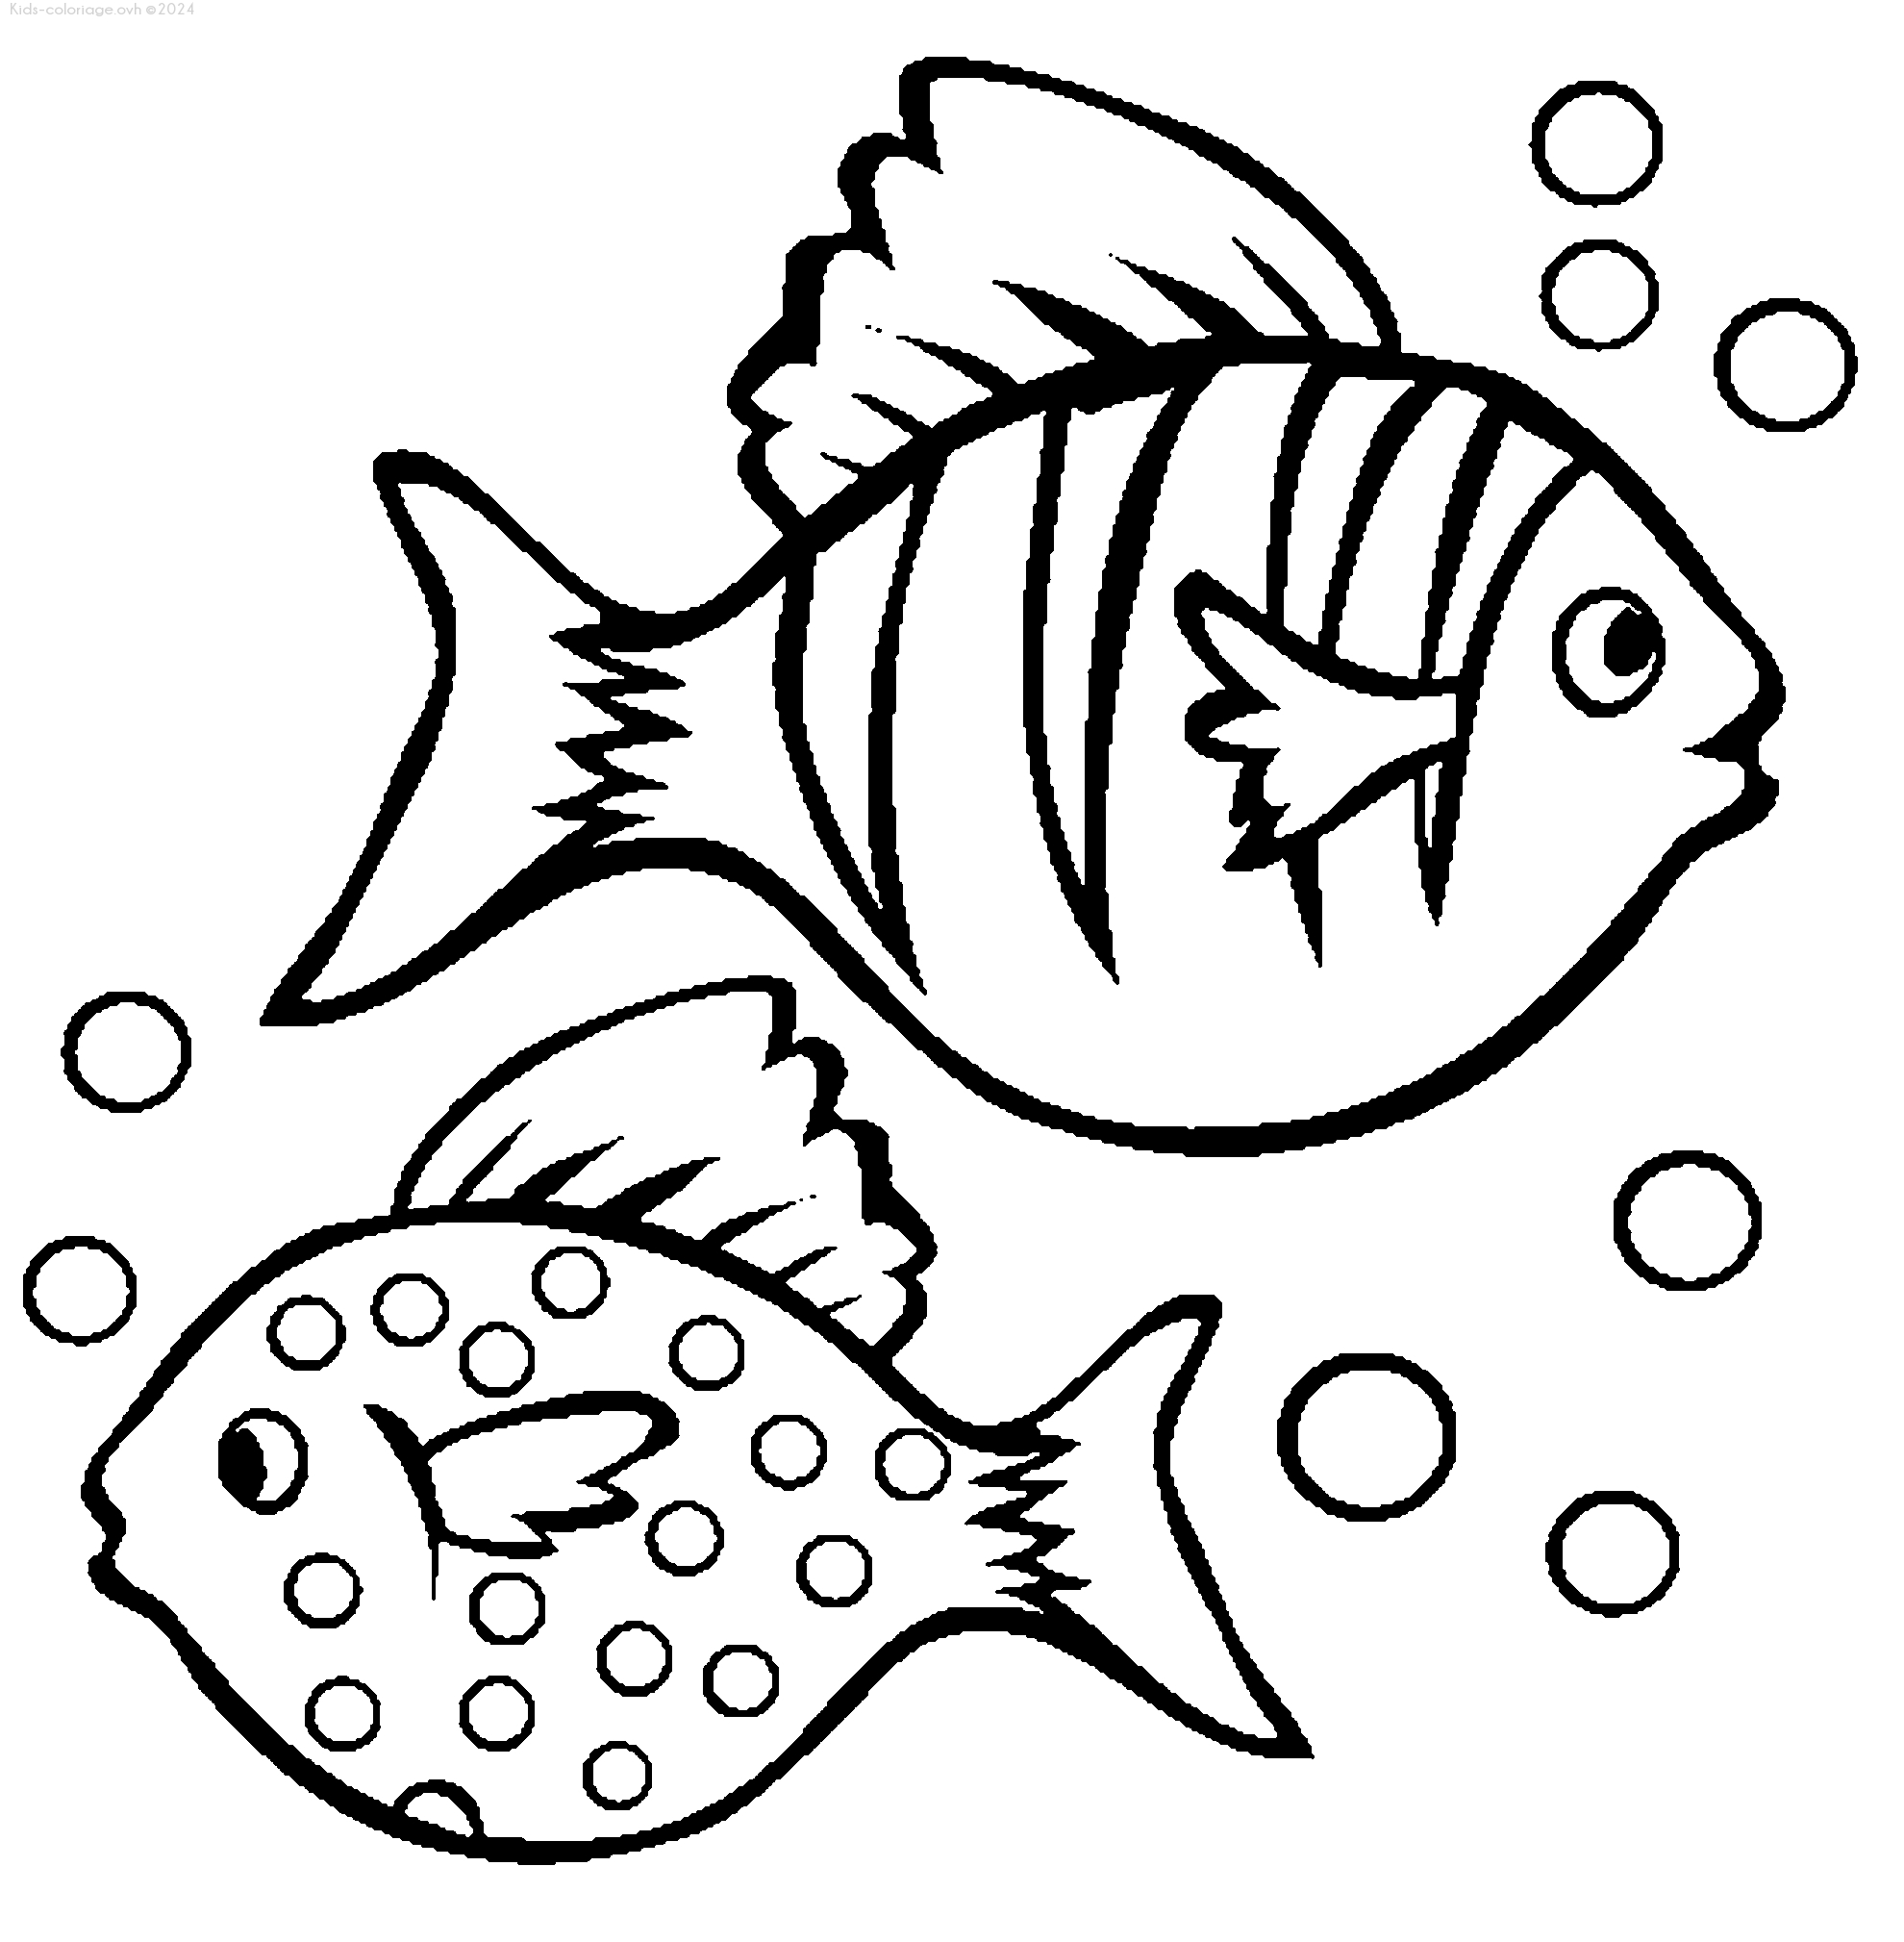 Раскраска рыбки для детей 5 6 лет. Рыбки для раскрашивания. Раскраска рыбка. Рыбка раскраска для детей. Рыба раскраска для детей.